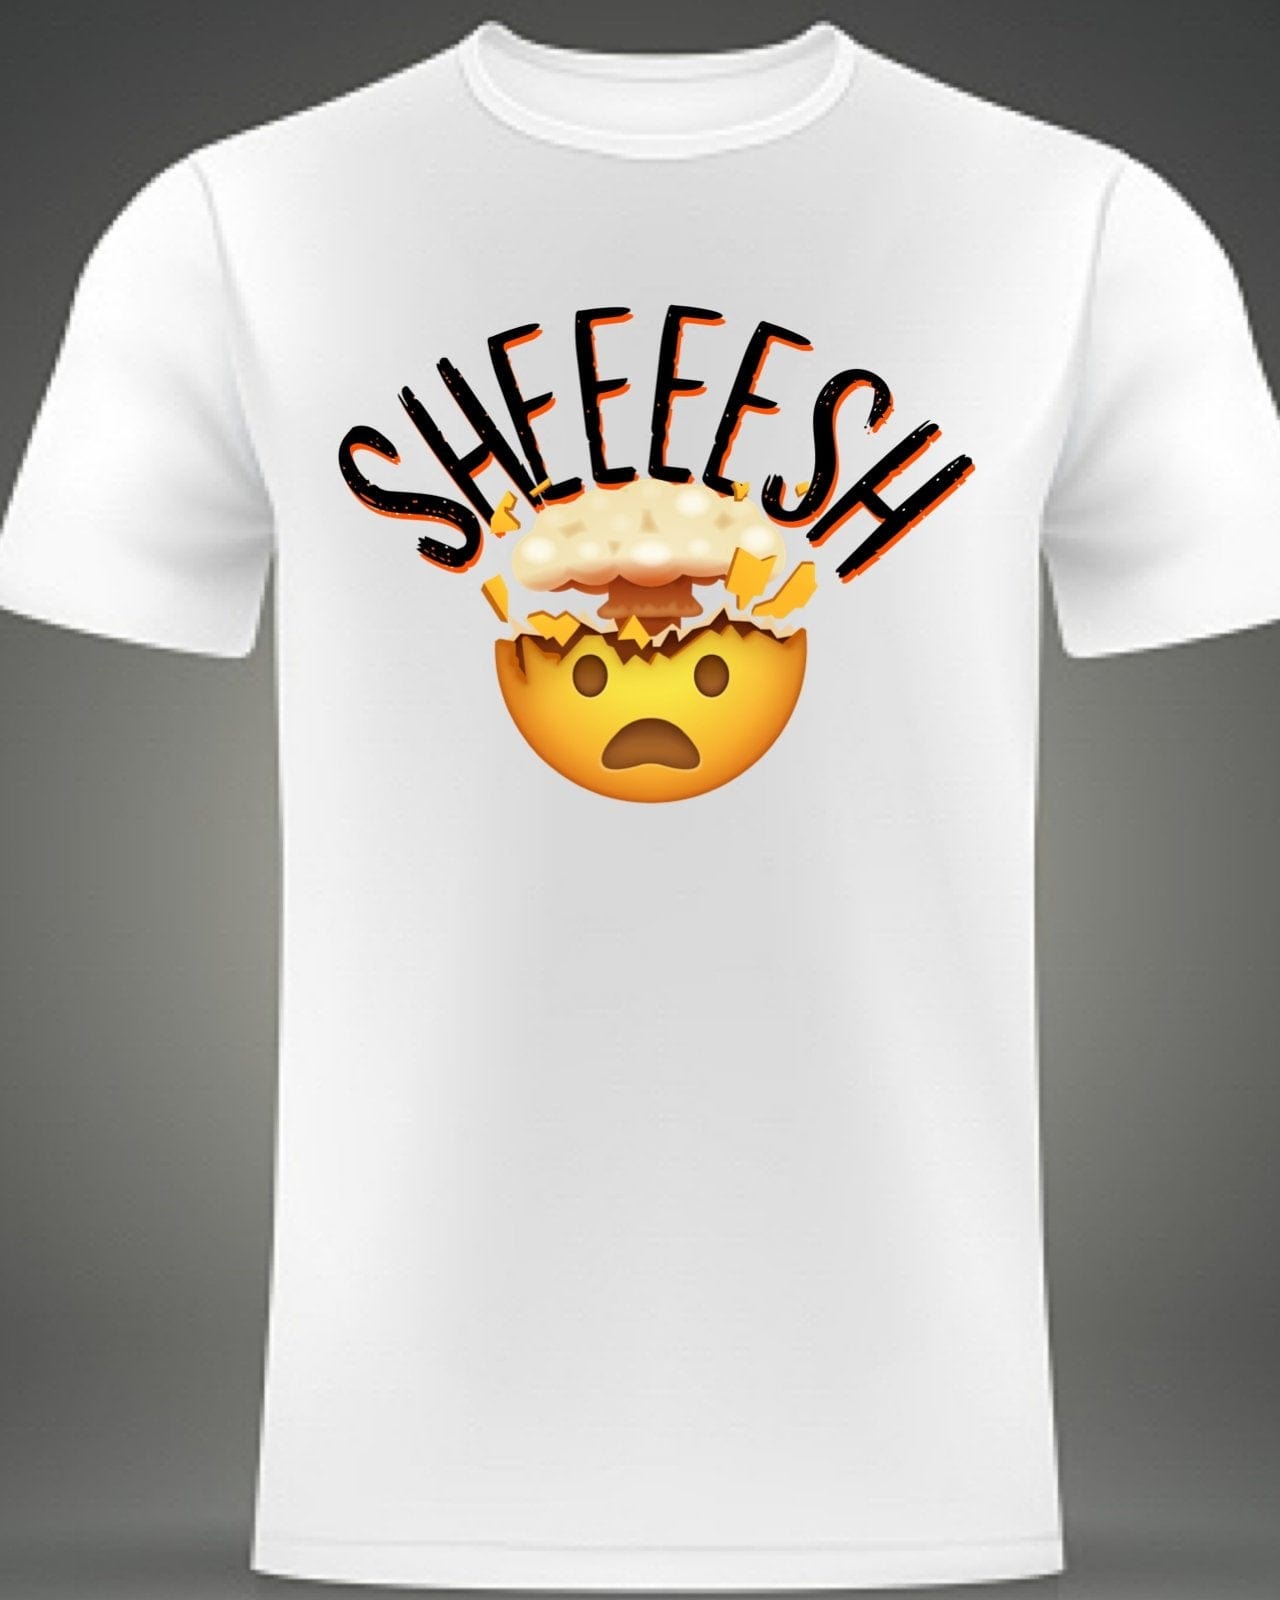 InsensitiviTees Shirts S / White Sheeeesh! T-shirt